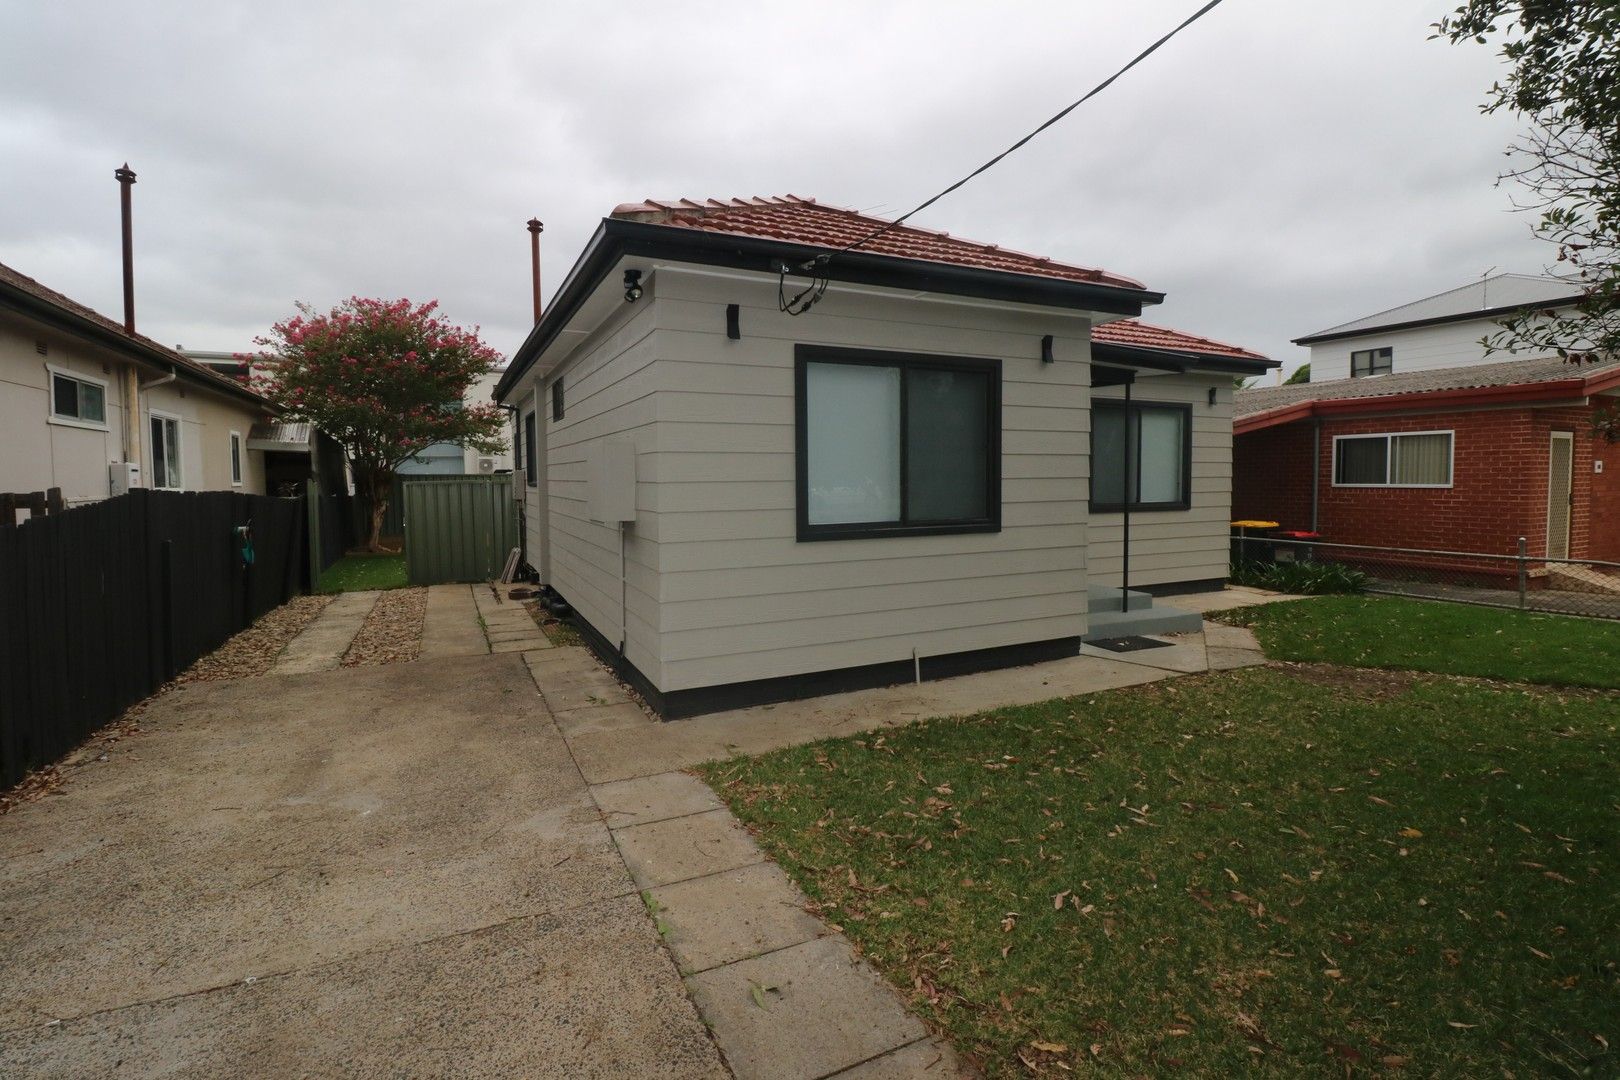 2 bedrooms House in Garden BELMORE NSW, 2192